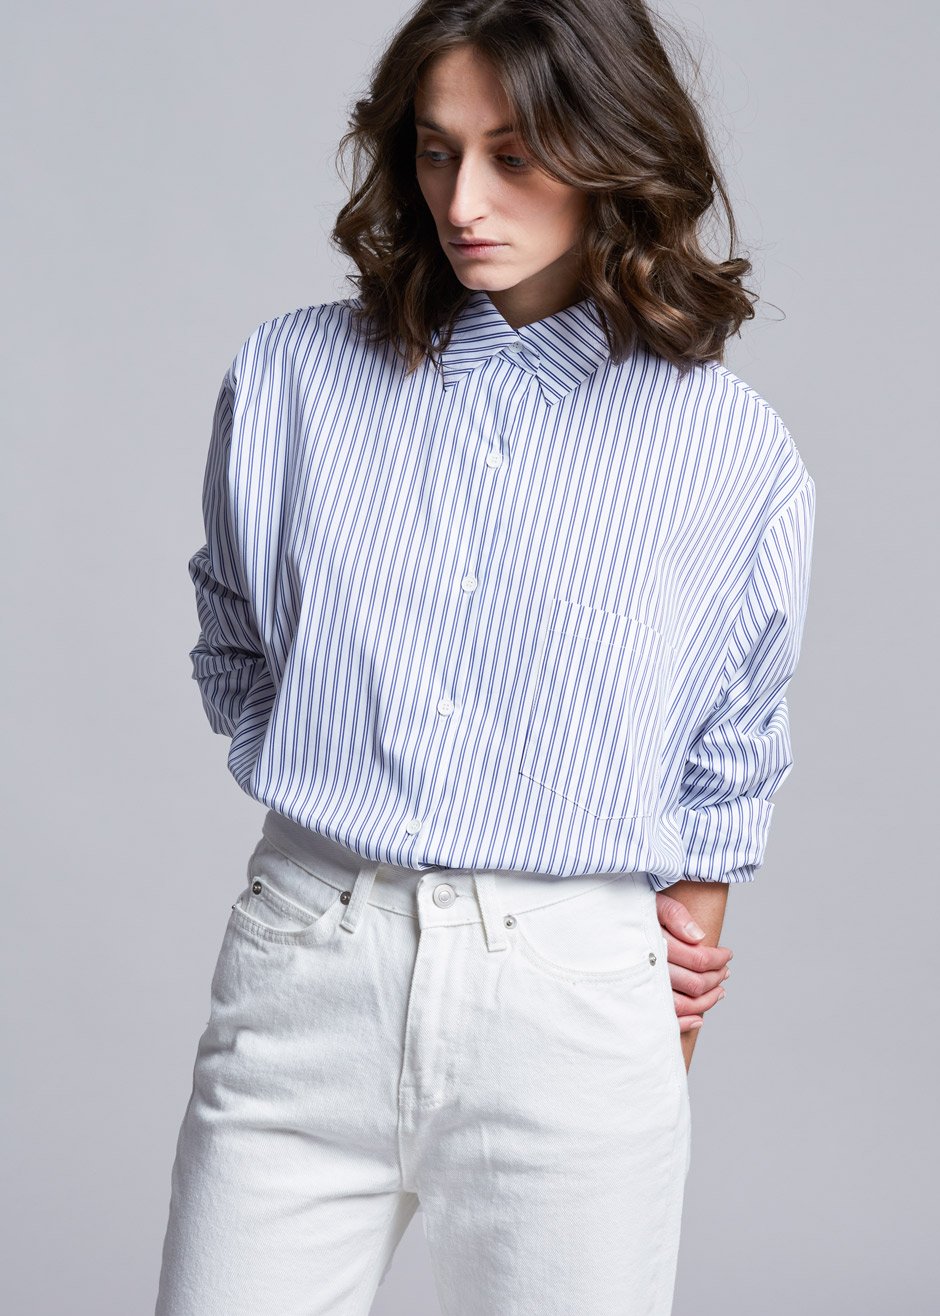 Pinstripe Statement Cuff Shirt in White/Cobalt